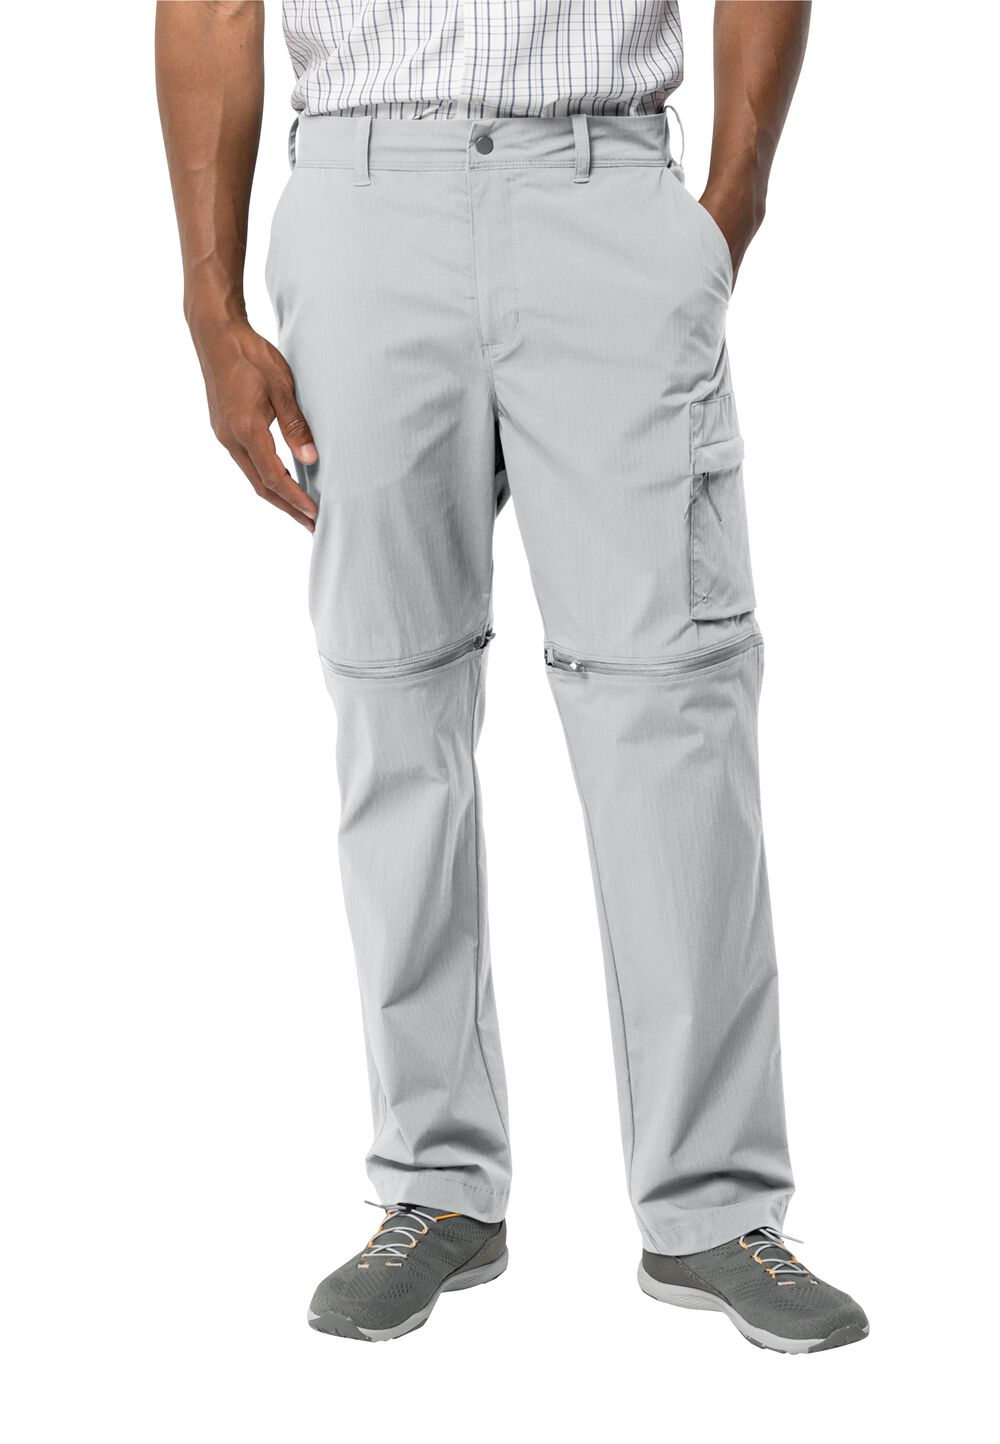 Jack Wolfskin Wanderthirst Zip Pants Men Zip-Off-broek Heren 56S grijs cool grey